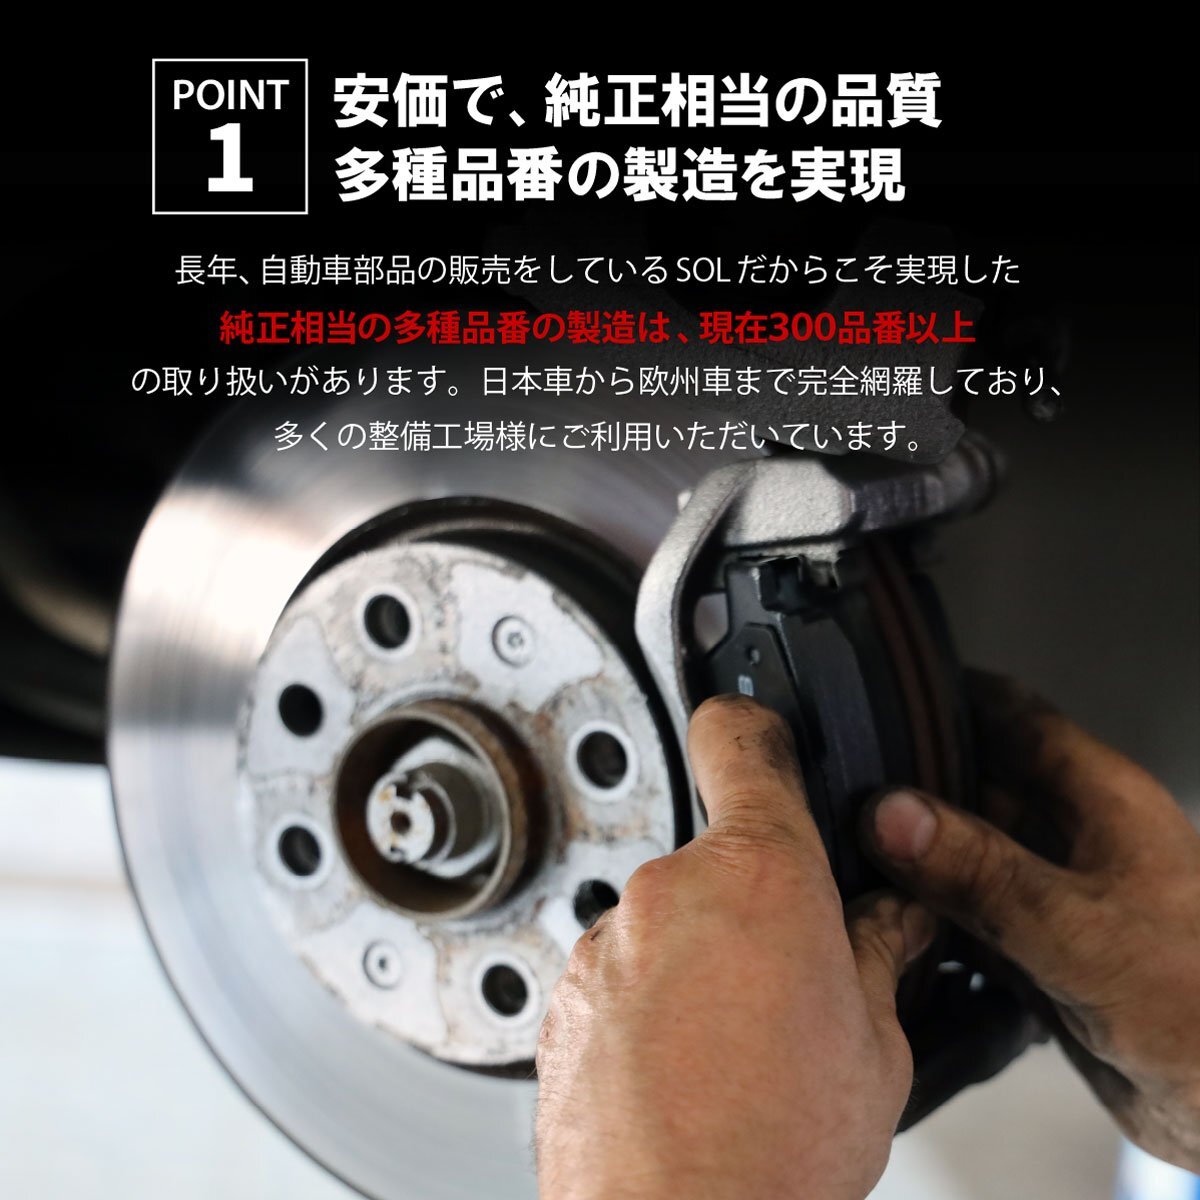  Toyota TOYOTA Alphard ANH20W передние тормозные накладки левый и правый в комплекте отгрузка конечный срок 18 час марка машины особый дизайн 04465-48150 04465-0E020